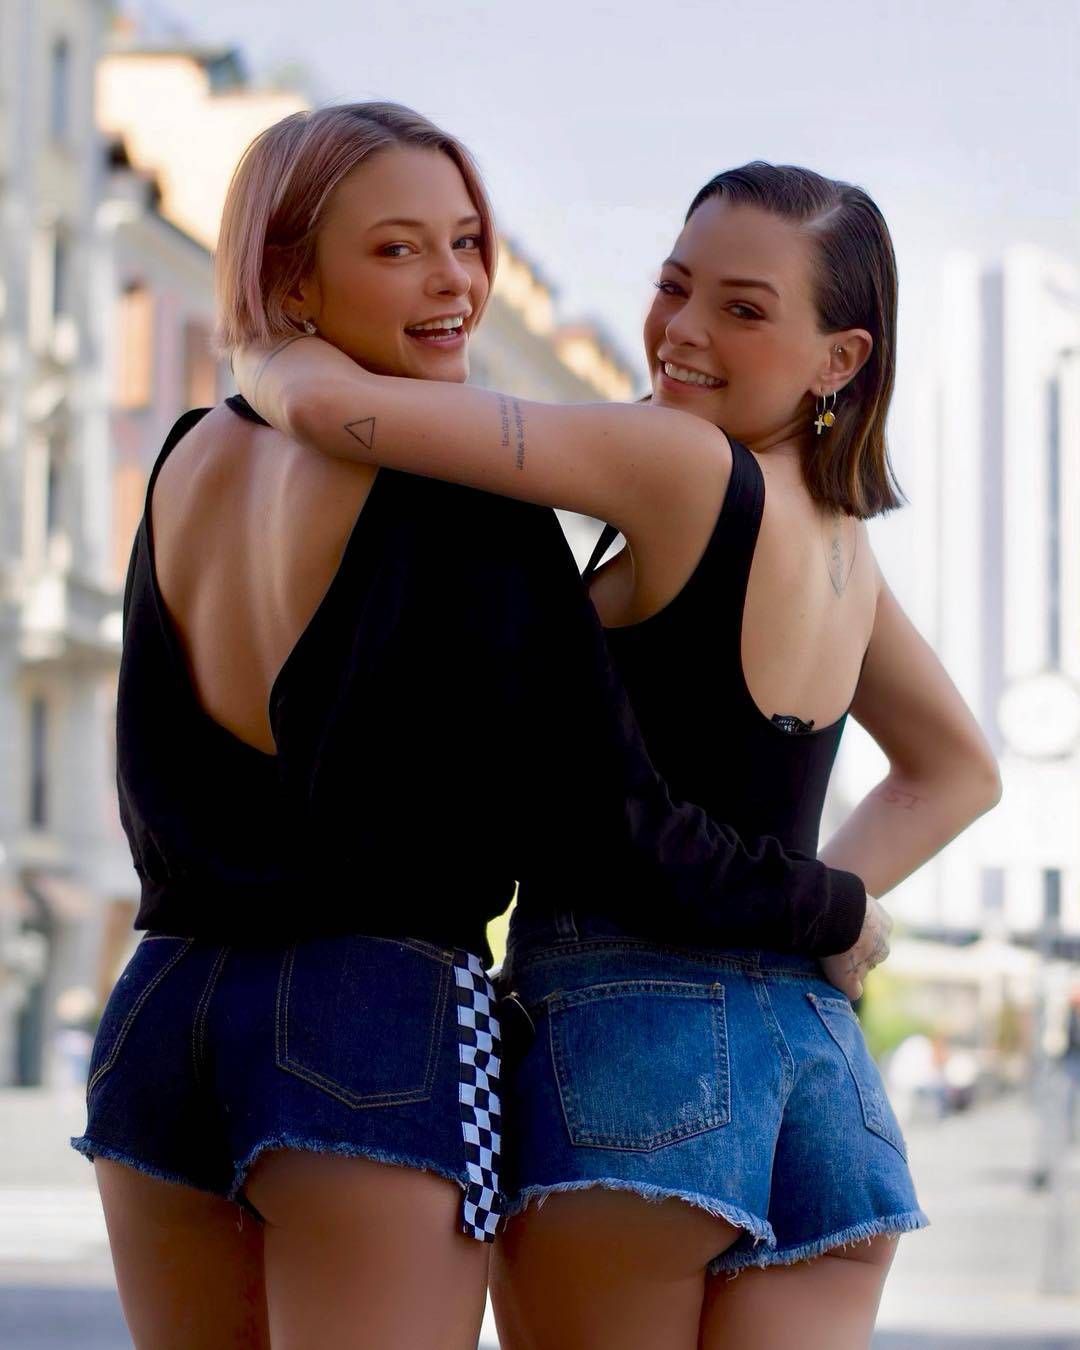 Le Donatella, foto di spalle ma gli shorts sono troppo corti: Fan in delirio